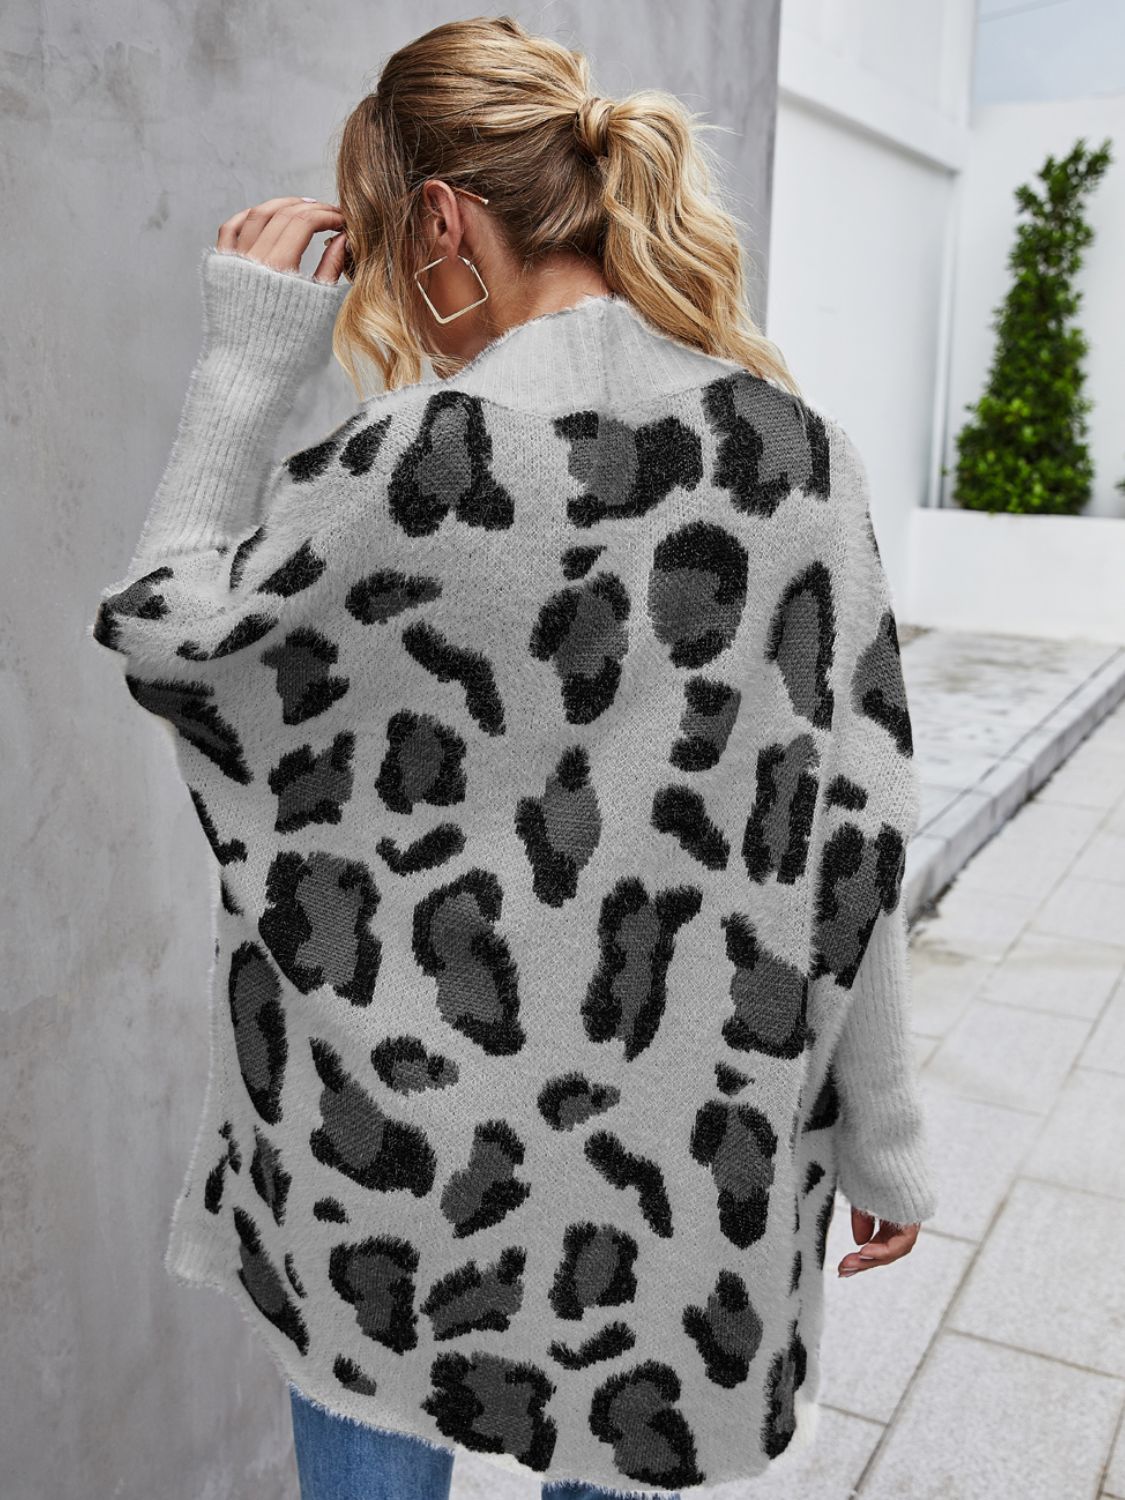 A Leopard Pattern Fuzzy Cardigan